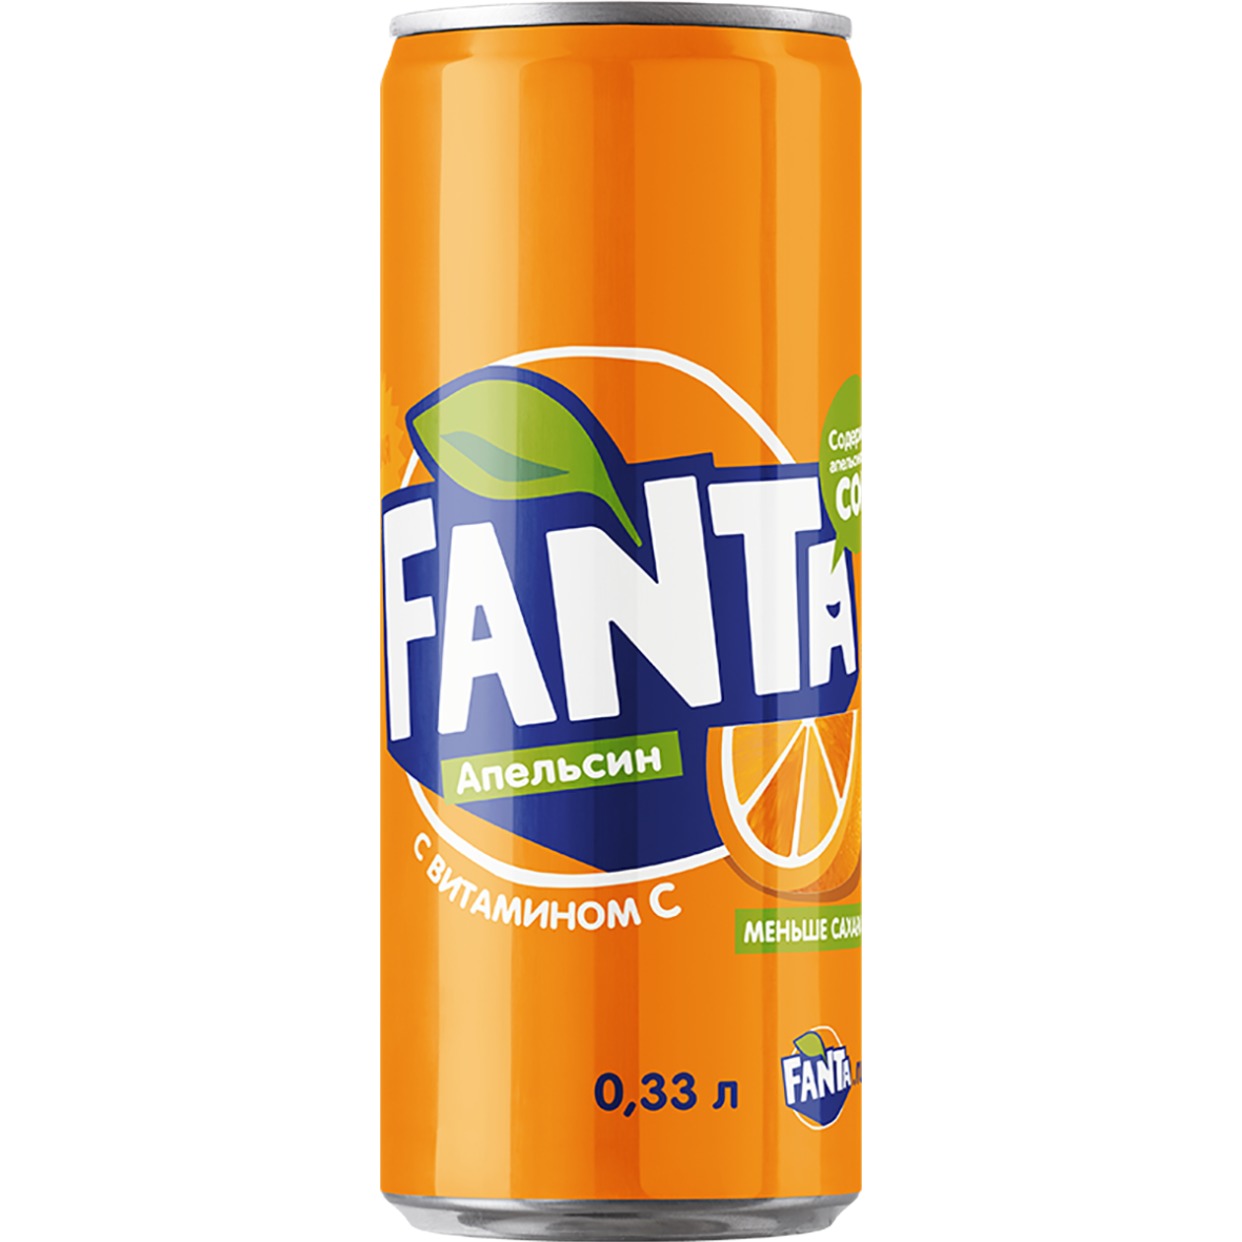 Напиток FANTA газированный, ж/б 0.33л по акции в Пятерочке